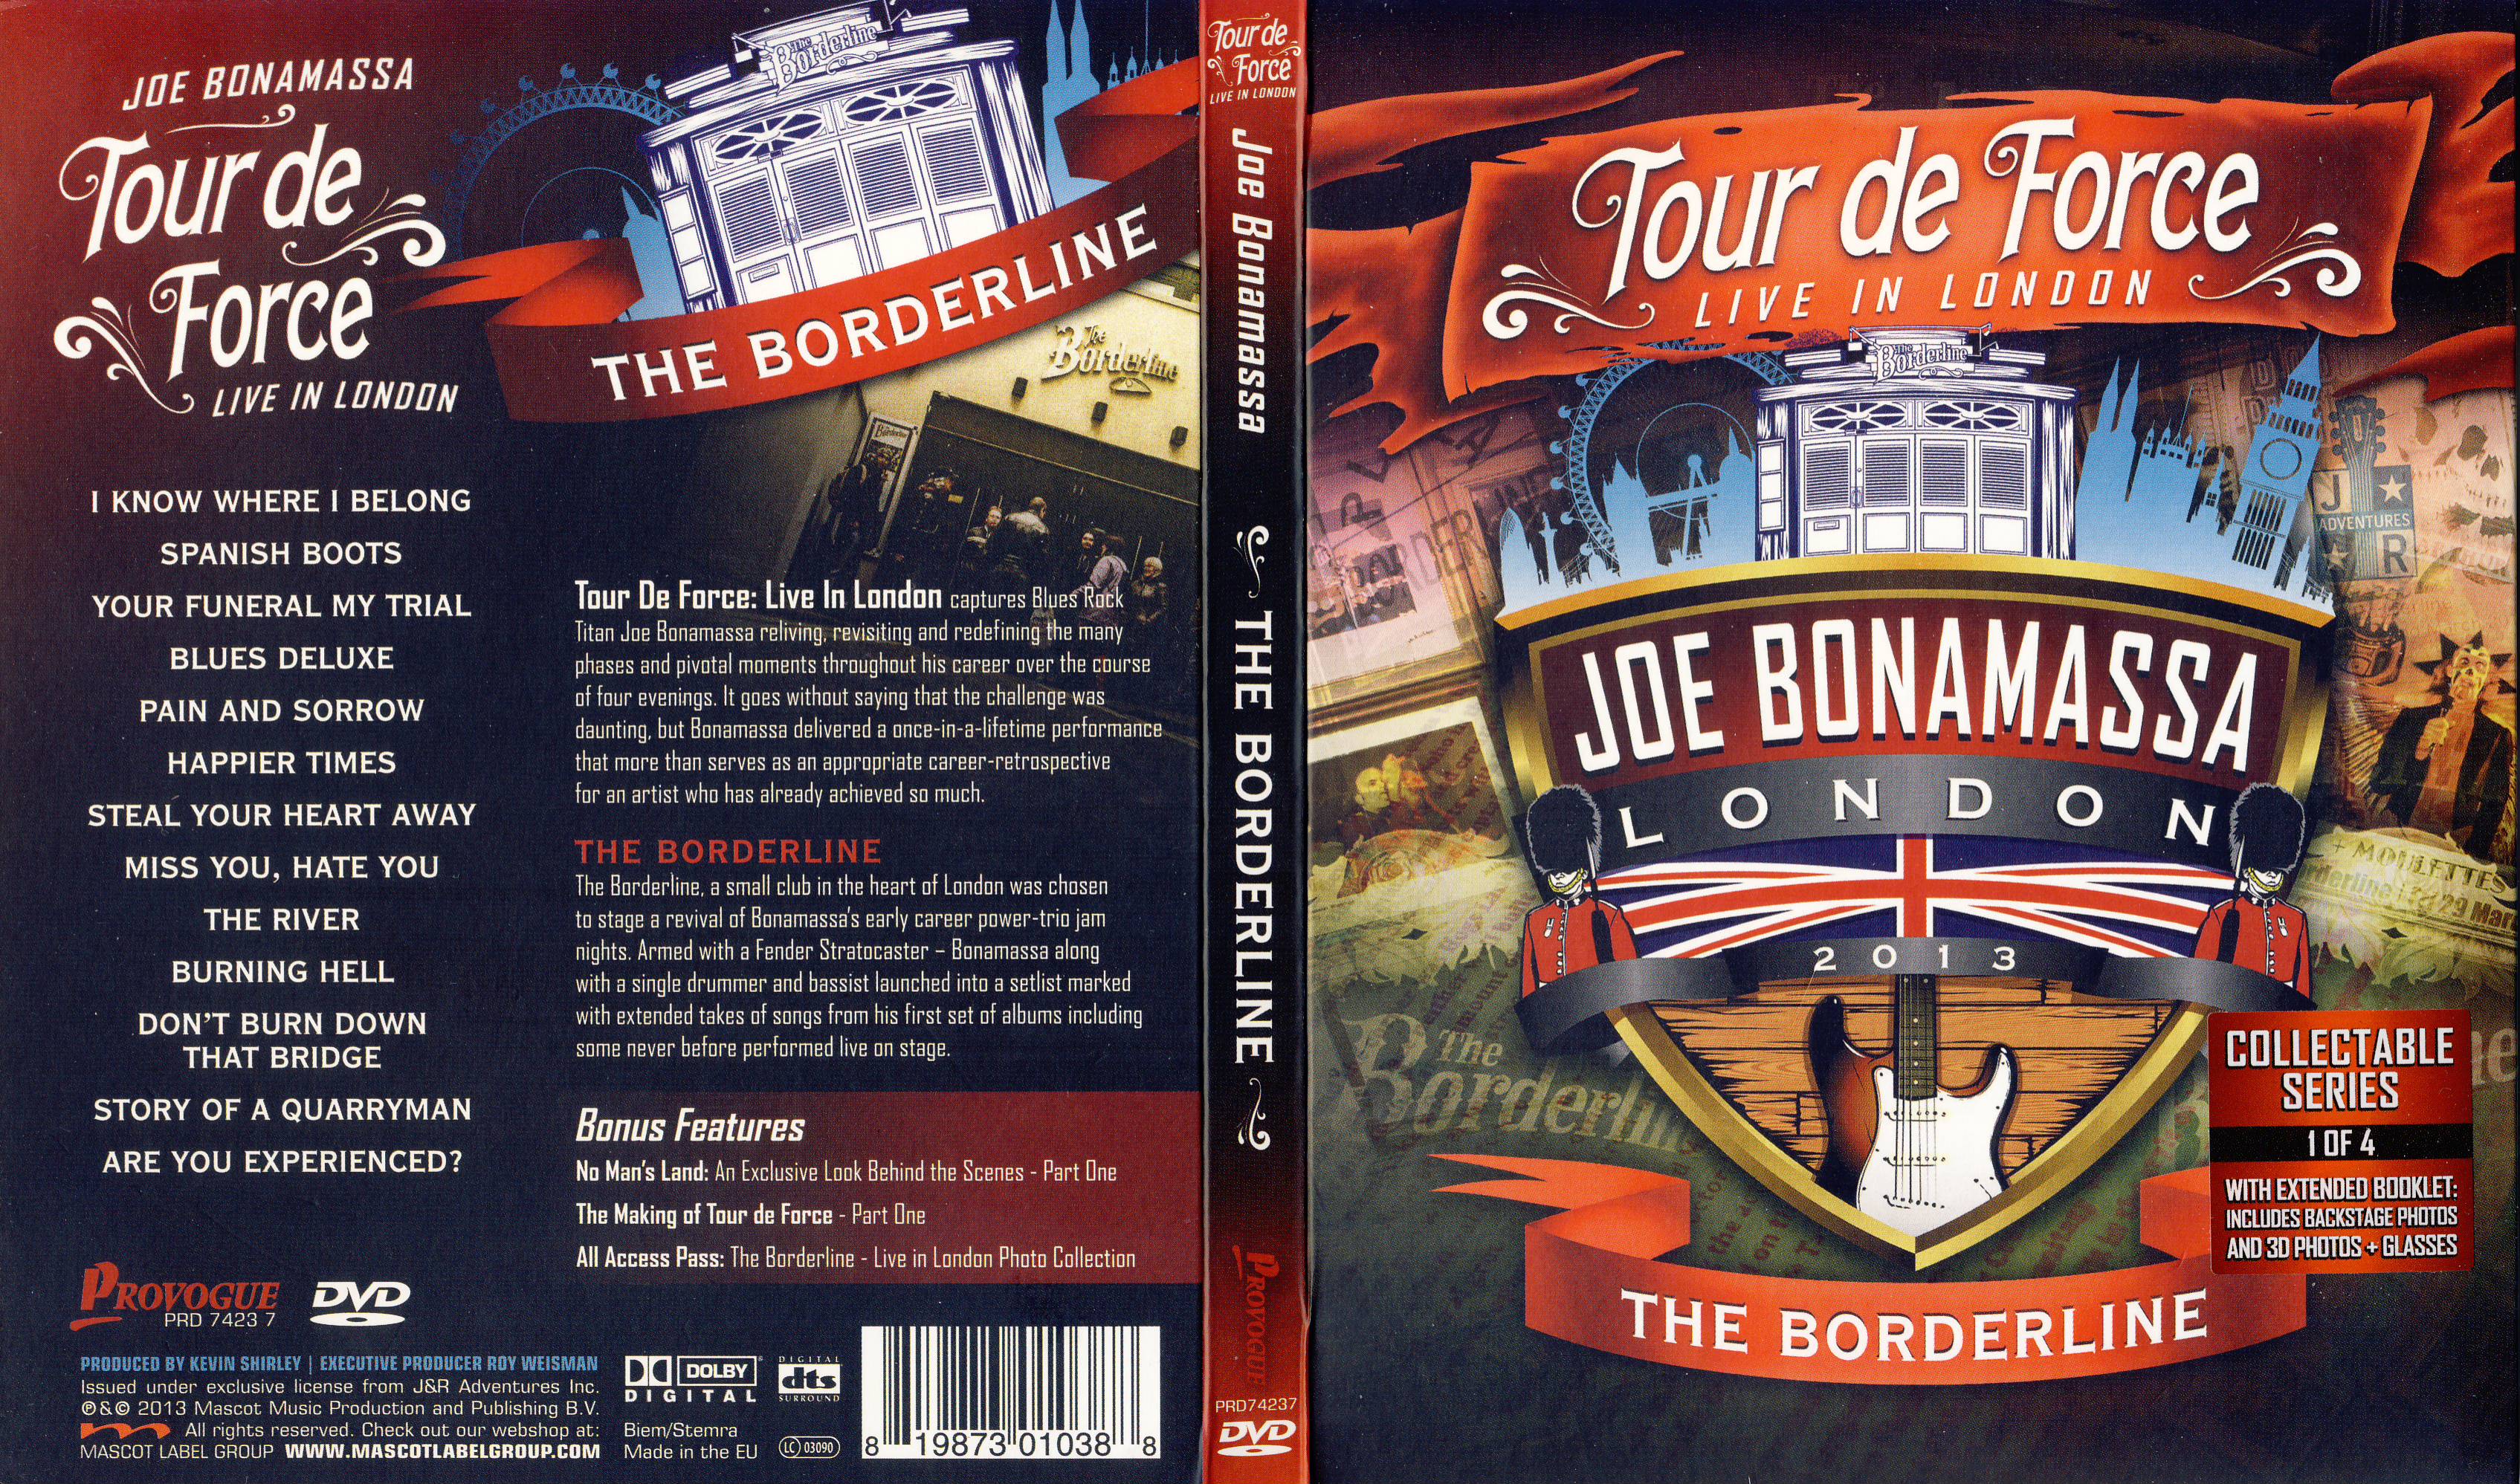 Jaquette DVD Joe Bonamassa Tour de Force london 2013  The Borderline